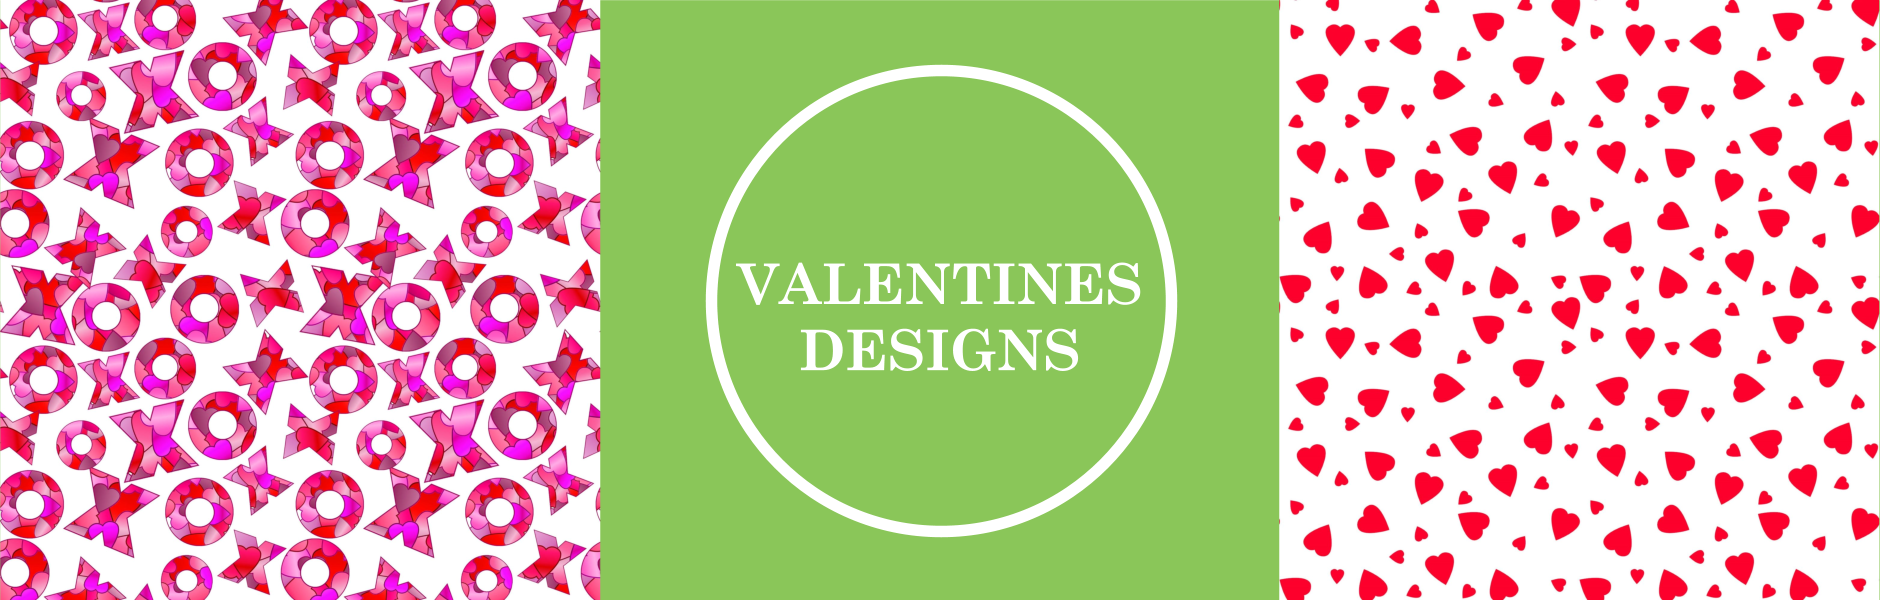 valentines design fabrics